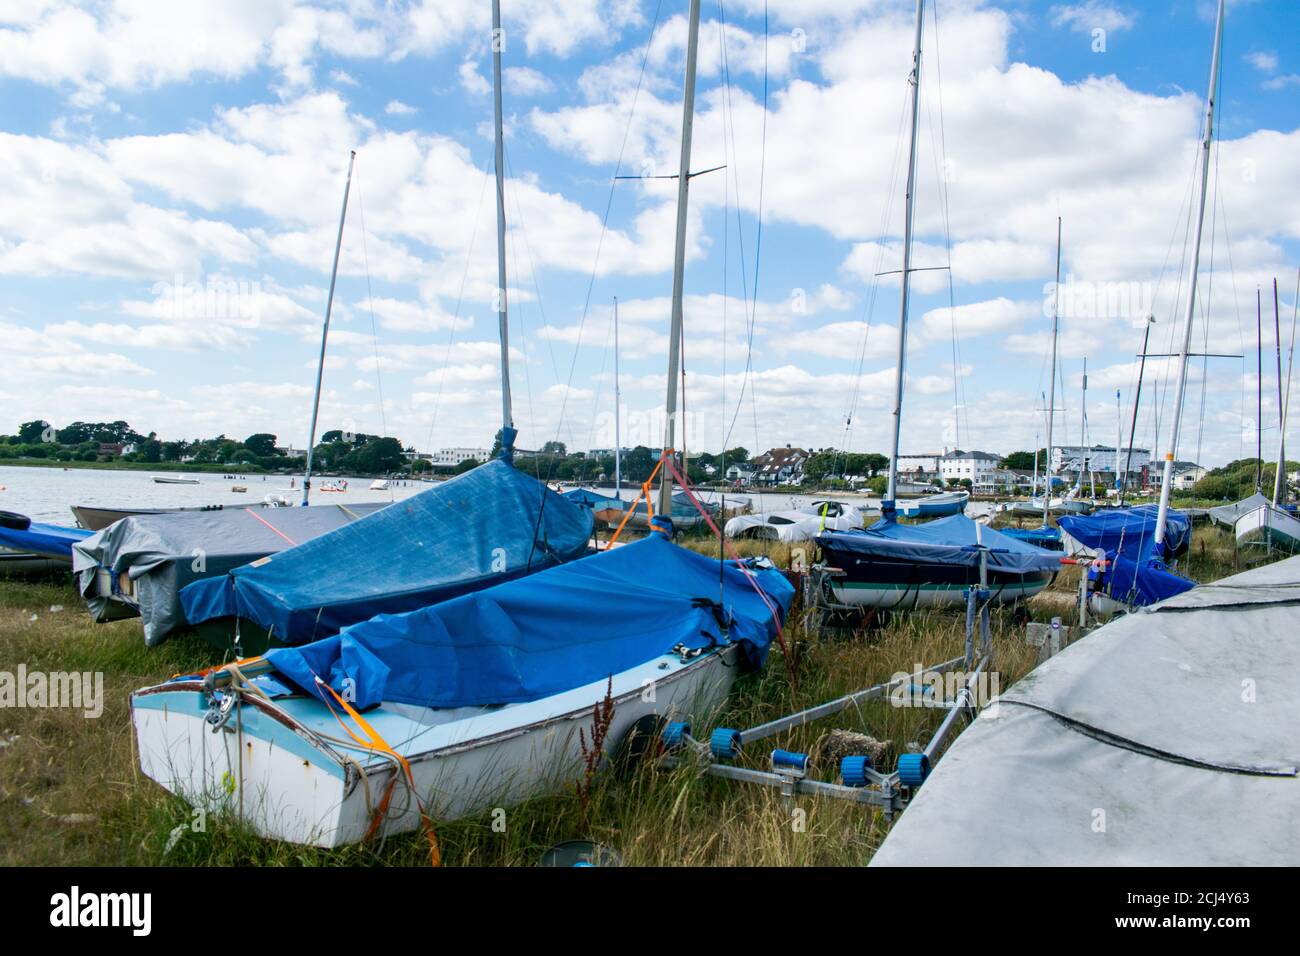 Petits bateaux de voile ou de pêche sur terre avec des mâts et des couvertures sur Mudeford Quay, dans le sud de l'Angleterre, beau ciel bleu ciel nuageux, beaucoup de dingies stockées sur Banque D'Images